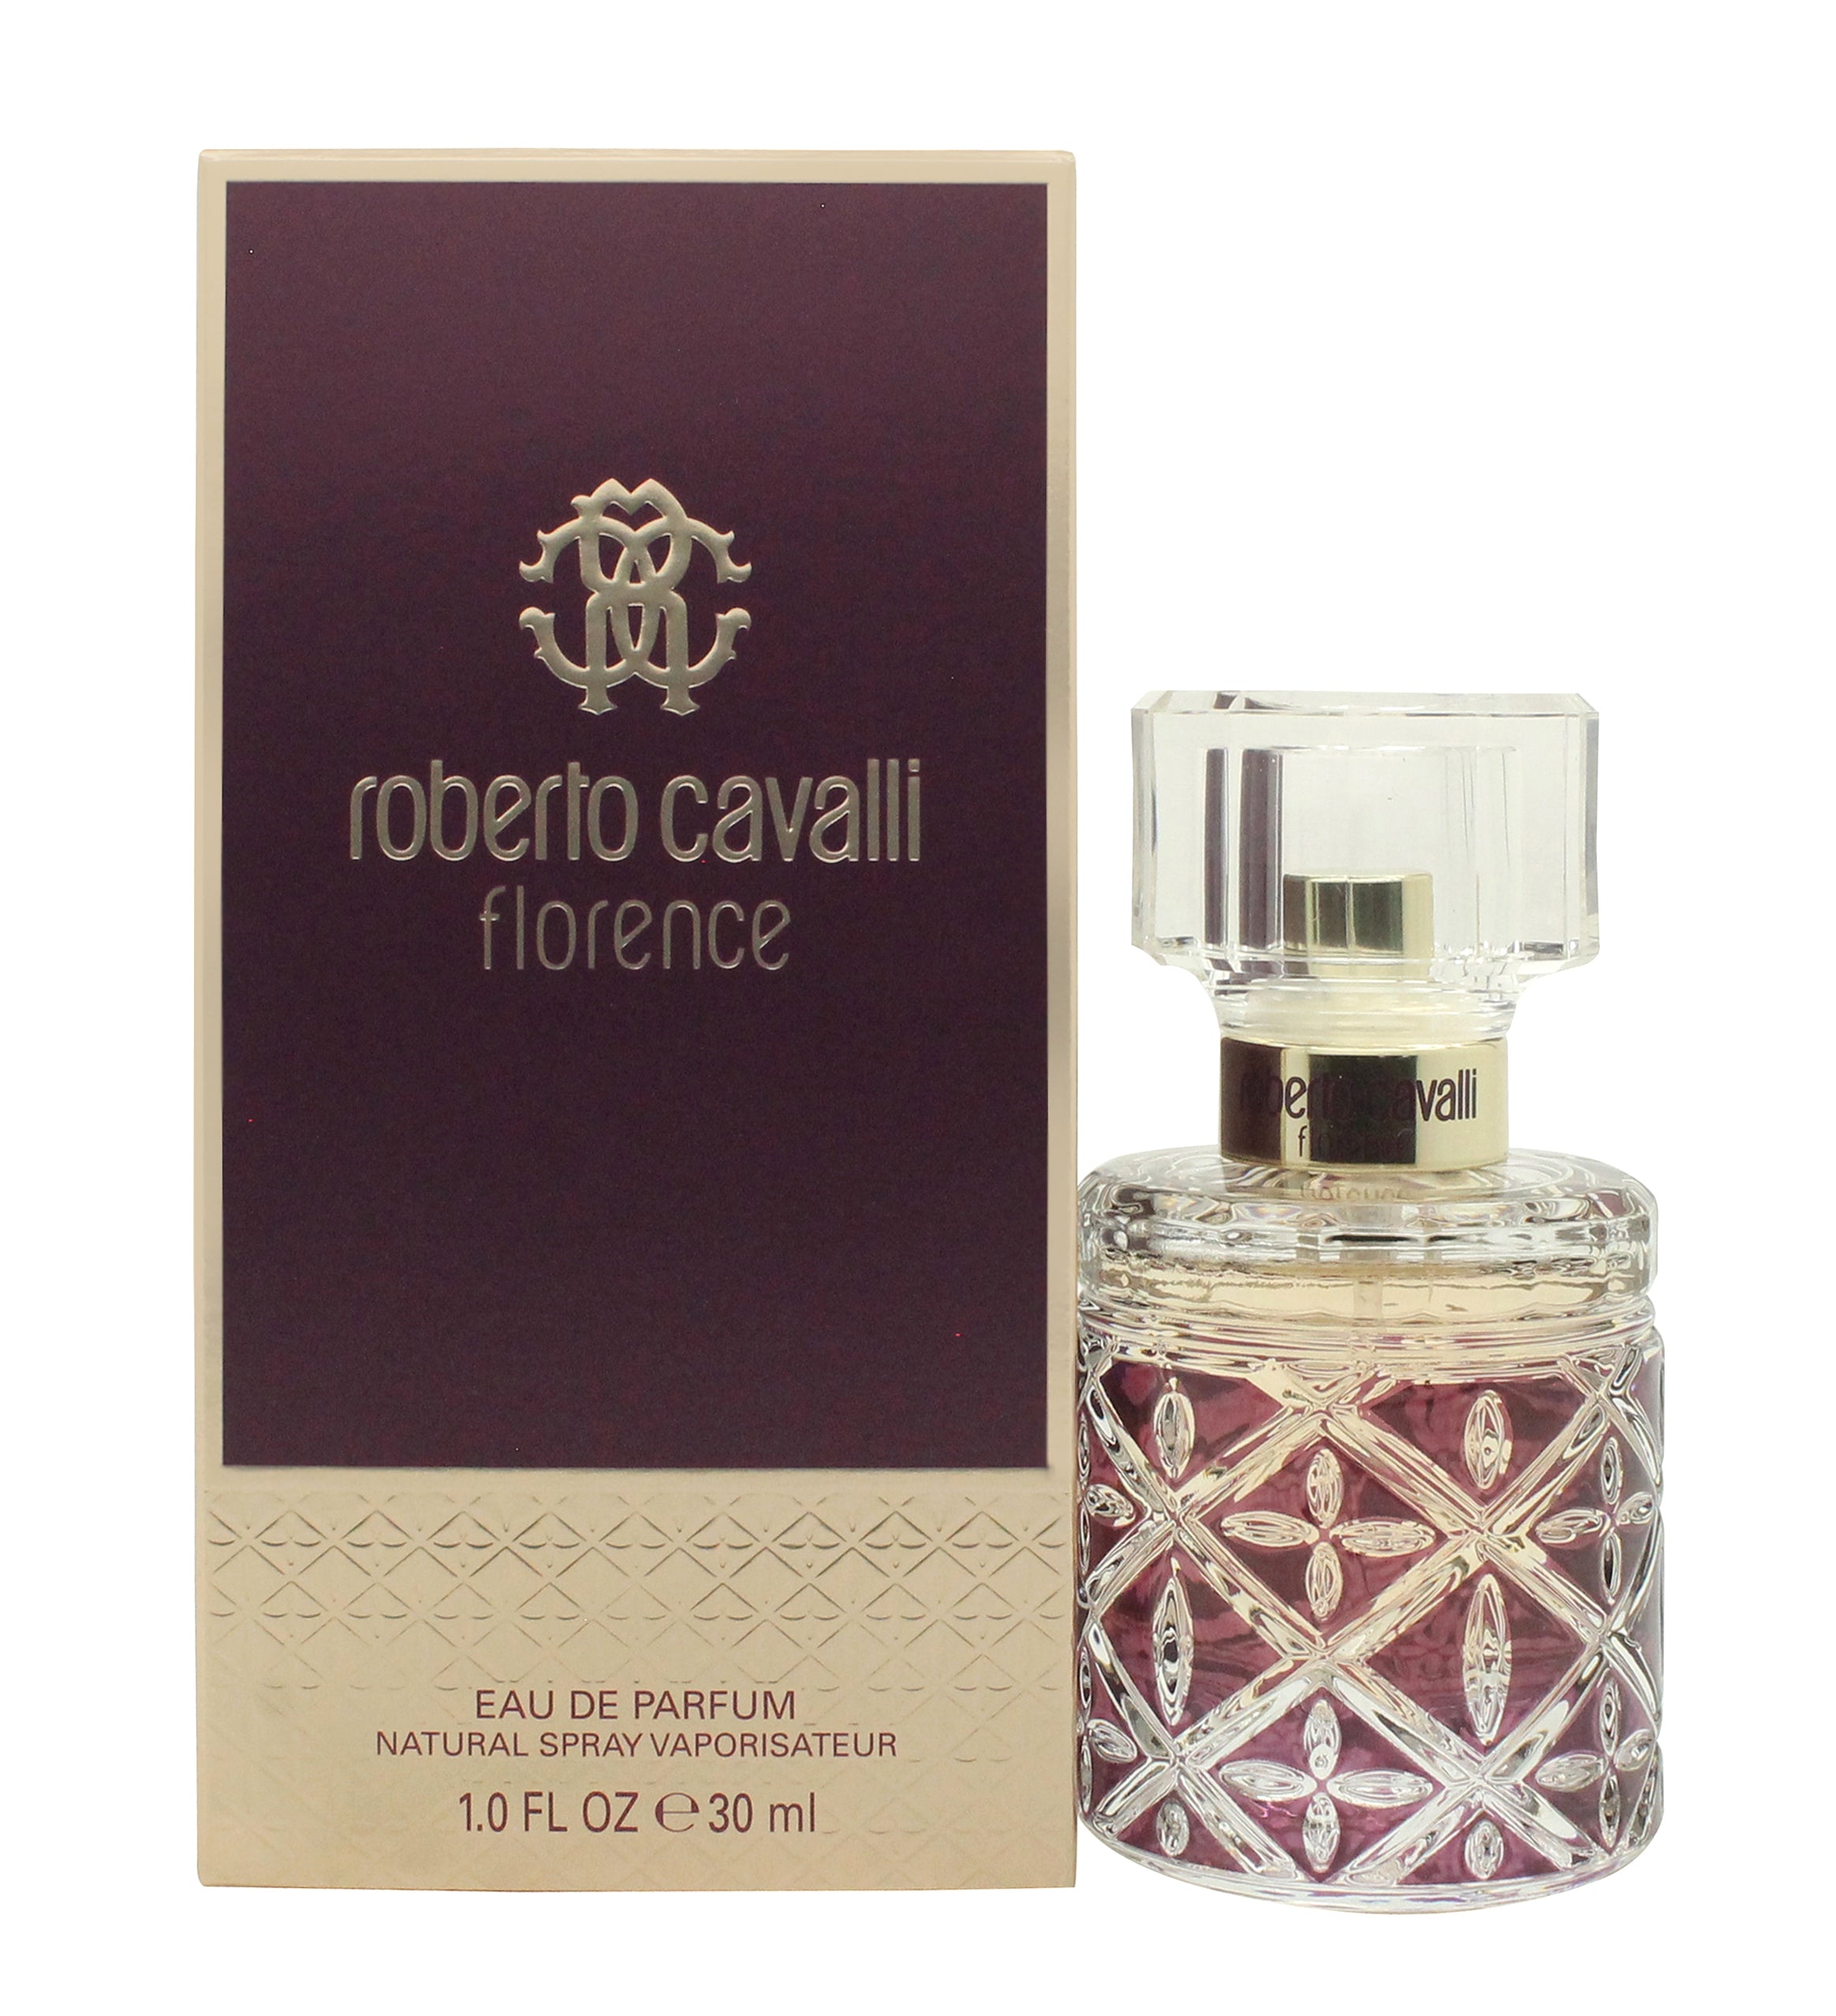 Photos - Women's Fragrance Roberto Cavalli Florence Eau de Parfum 30ml Spray - Peacock Bazaar H281953 